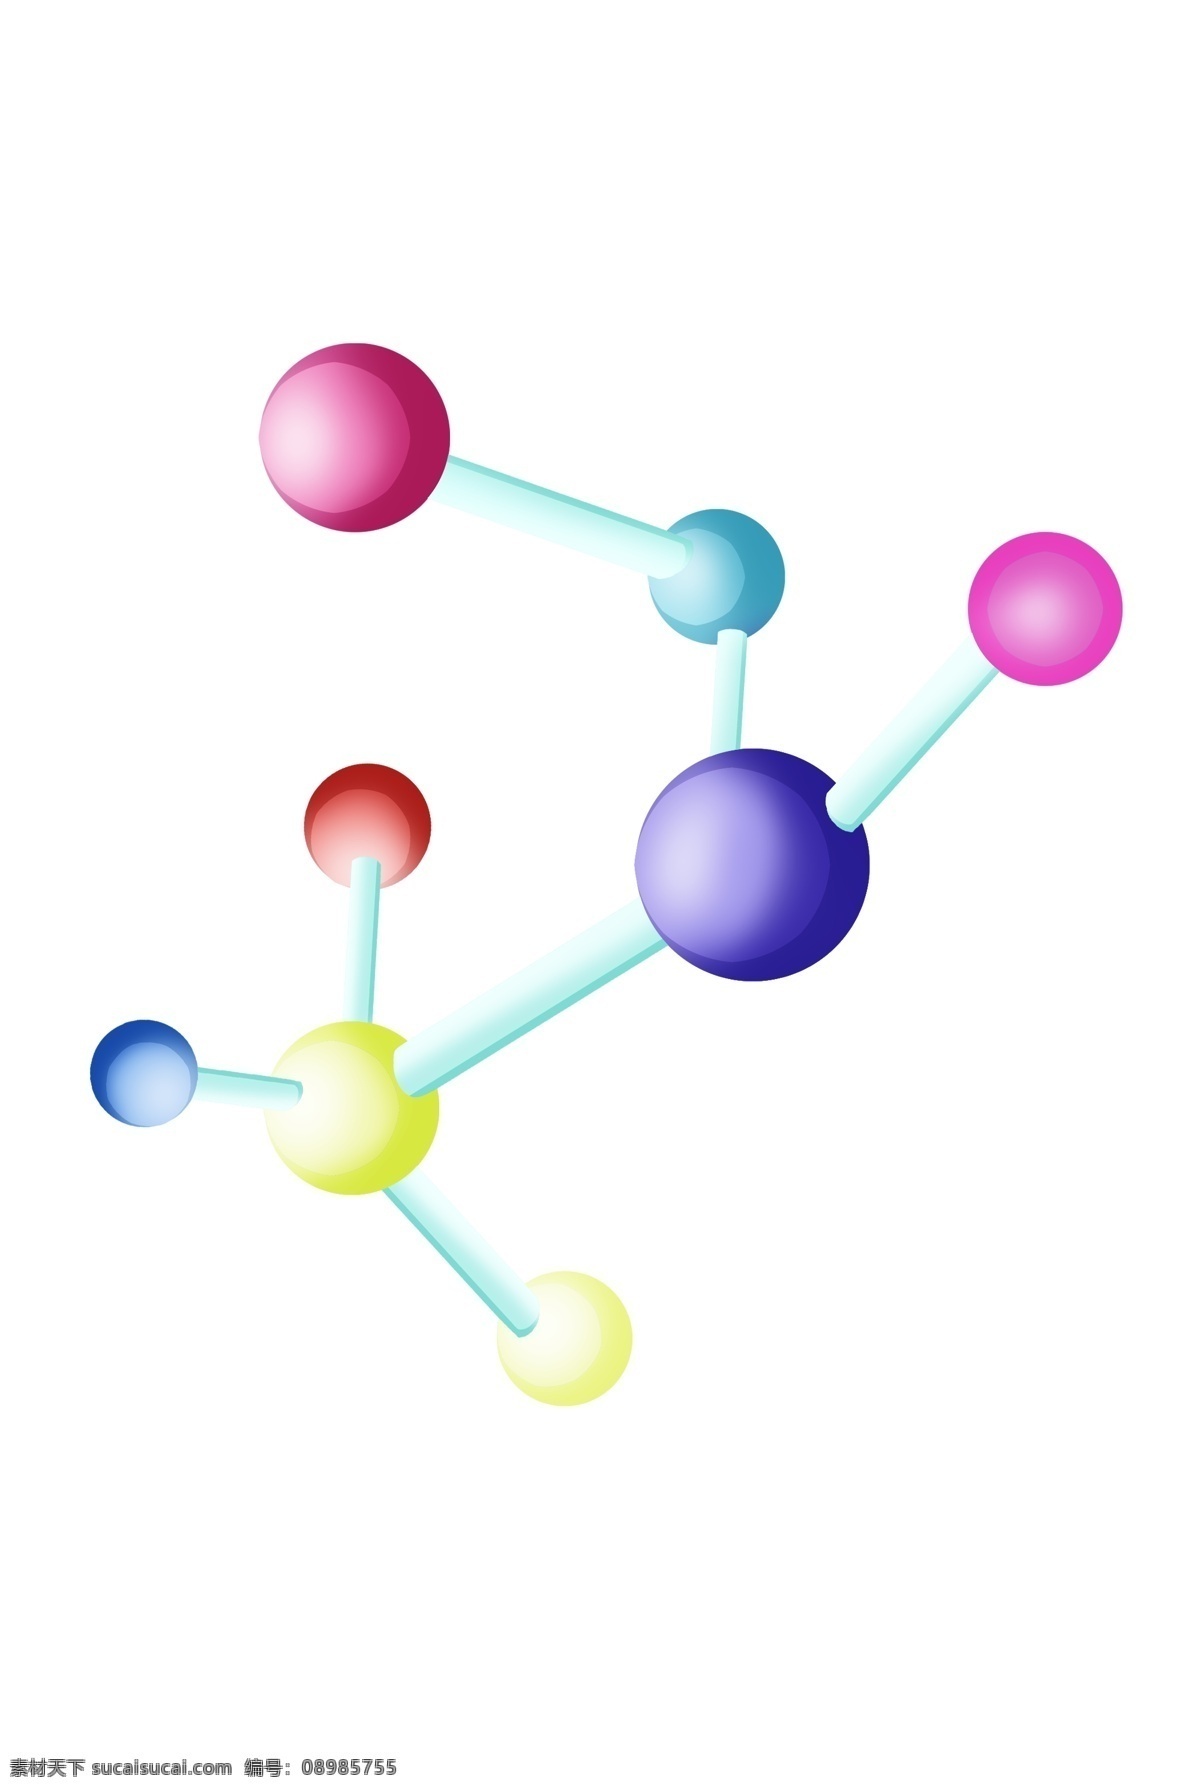 卡通化 学 分子式 插画 公式 卡通公式插画 蓝色的小球 化学分子式 公式插画 化学实验 结构图